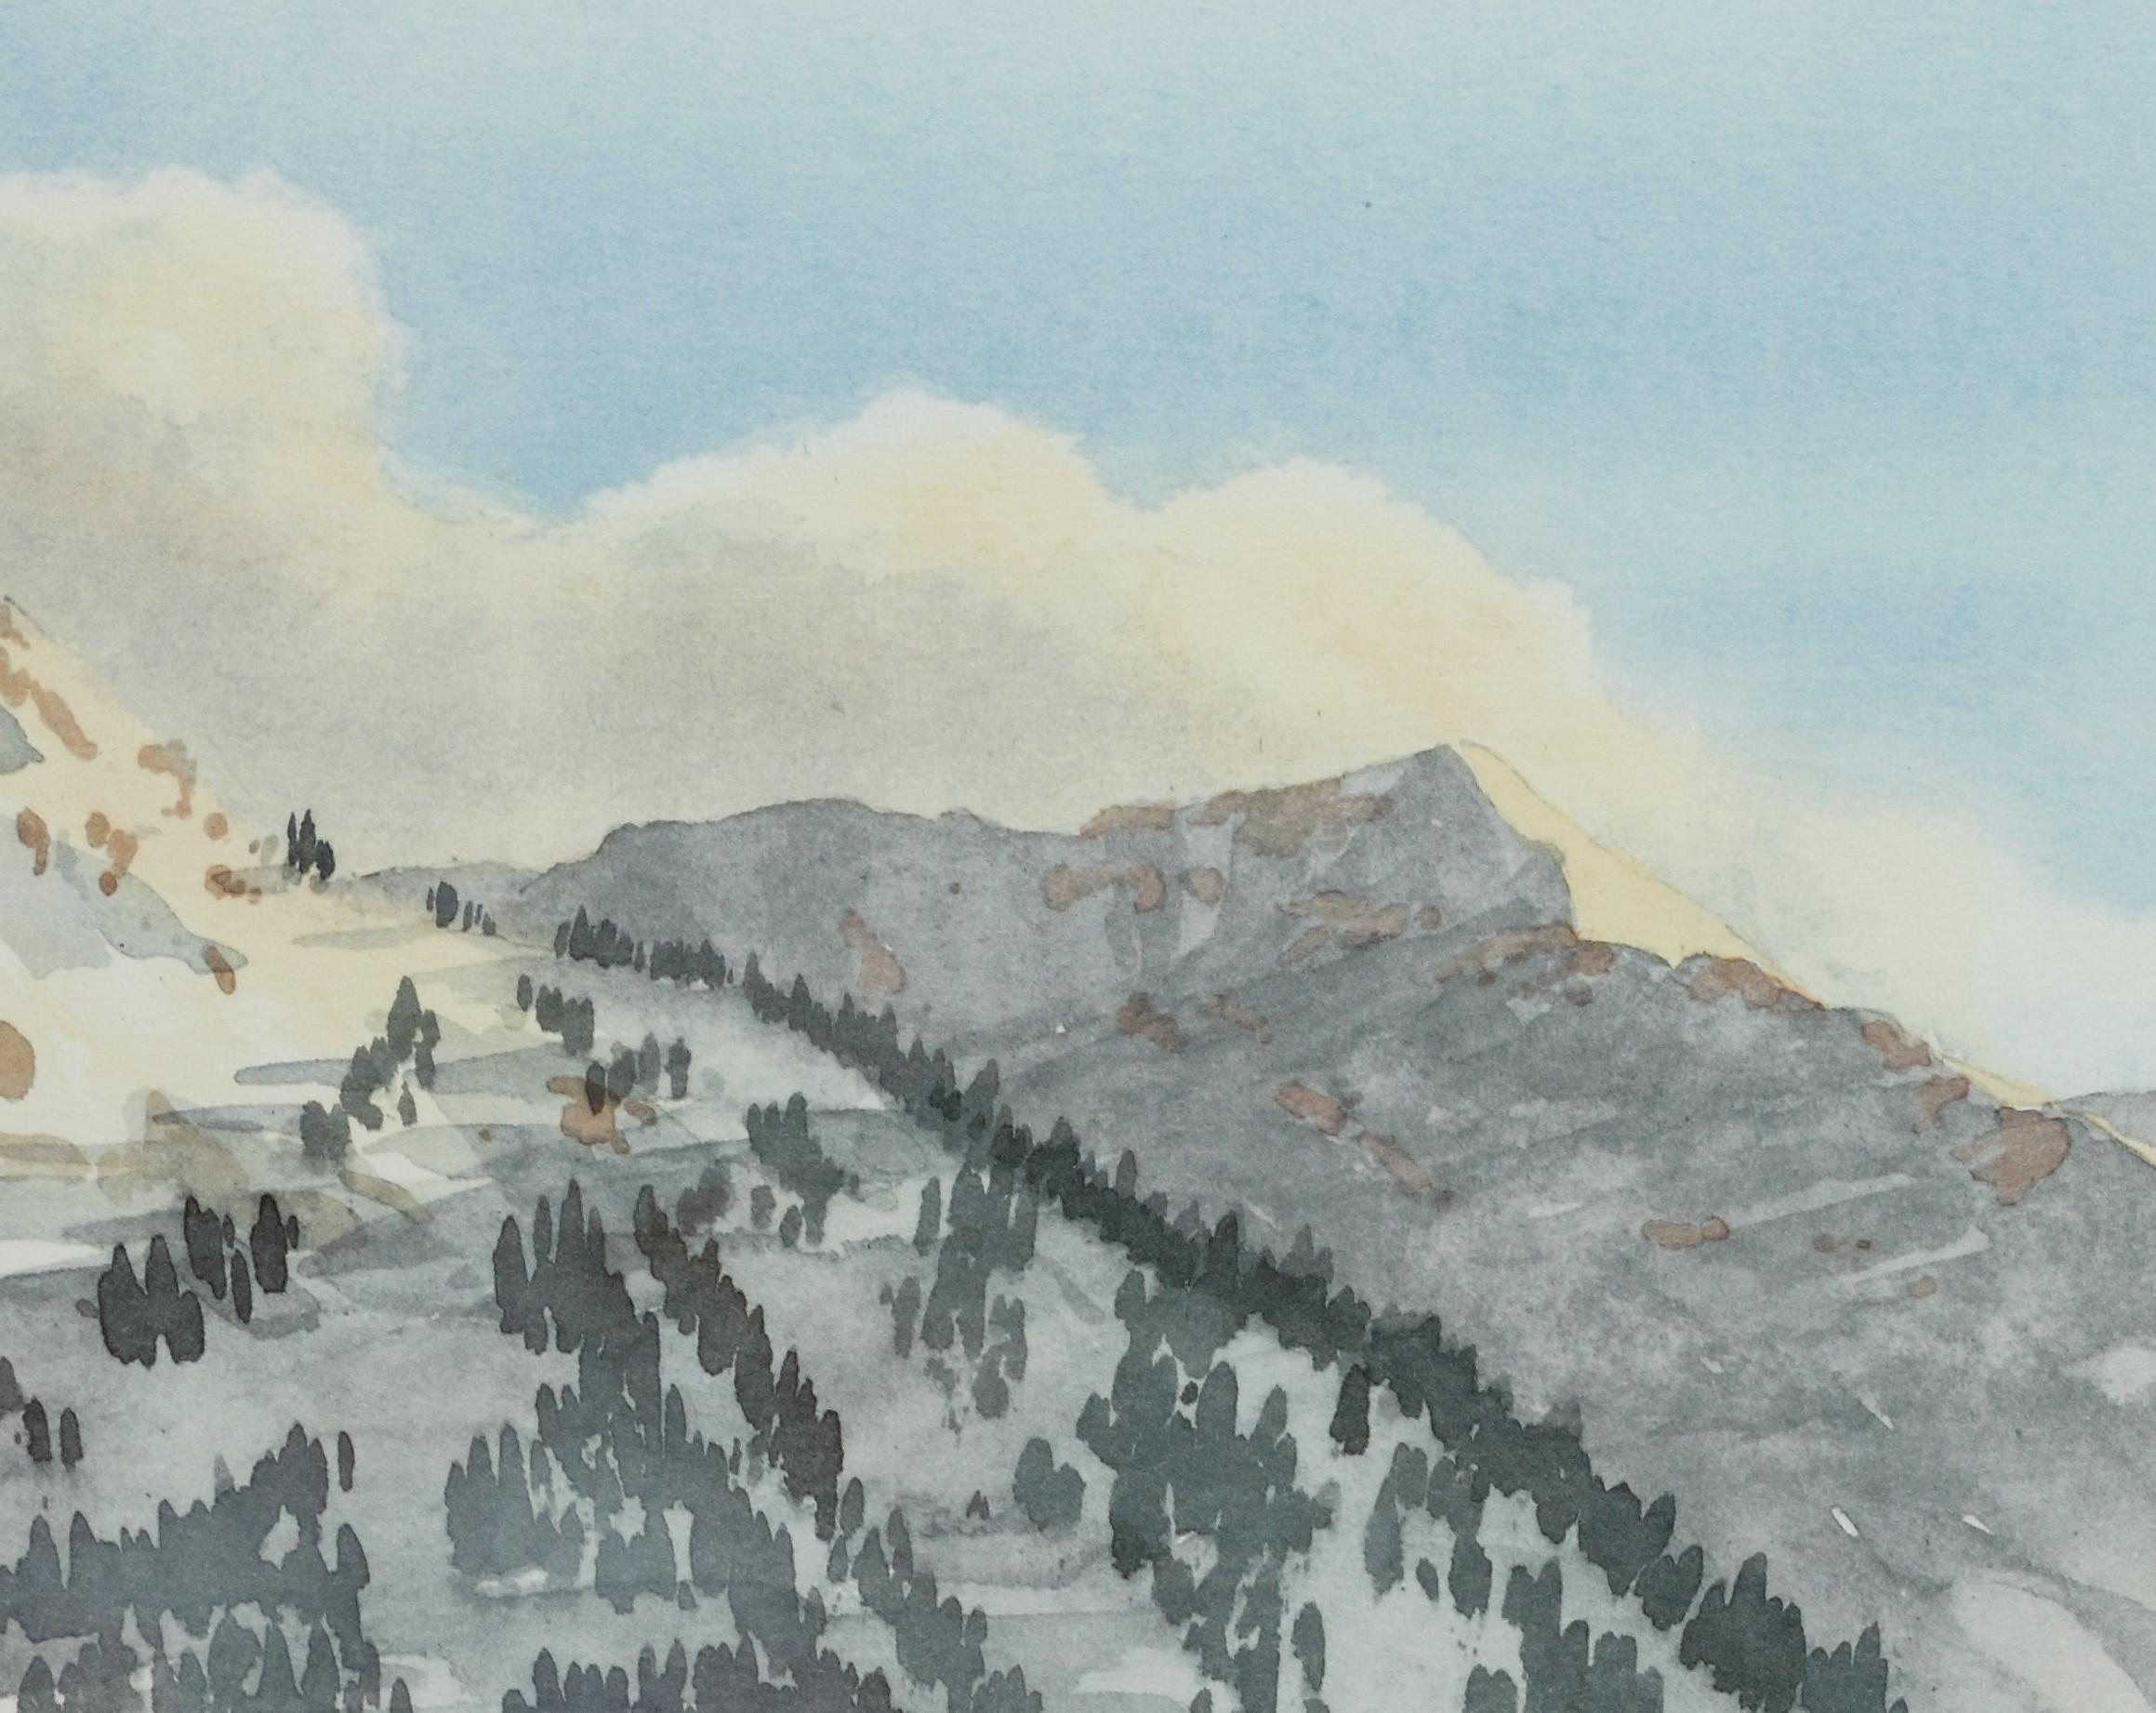 Klosters - Signierte Lithographie, Royal Art, Schweiz, Berge, Hüreli, Skifahren  – Print von His Majesty King Charles III